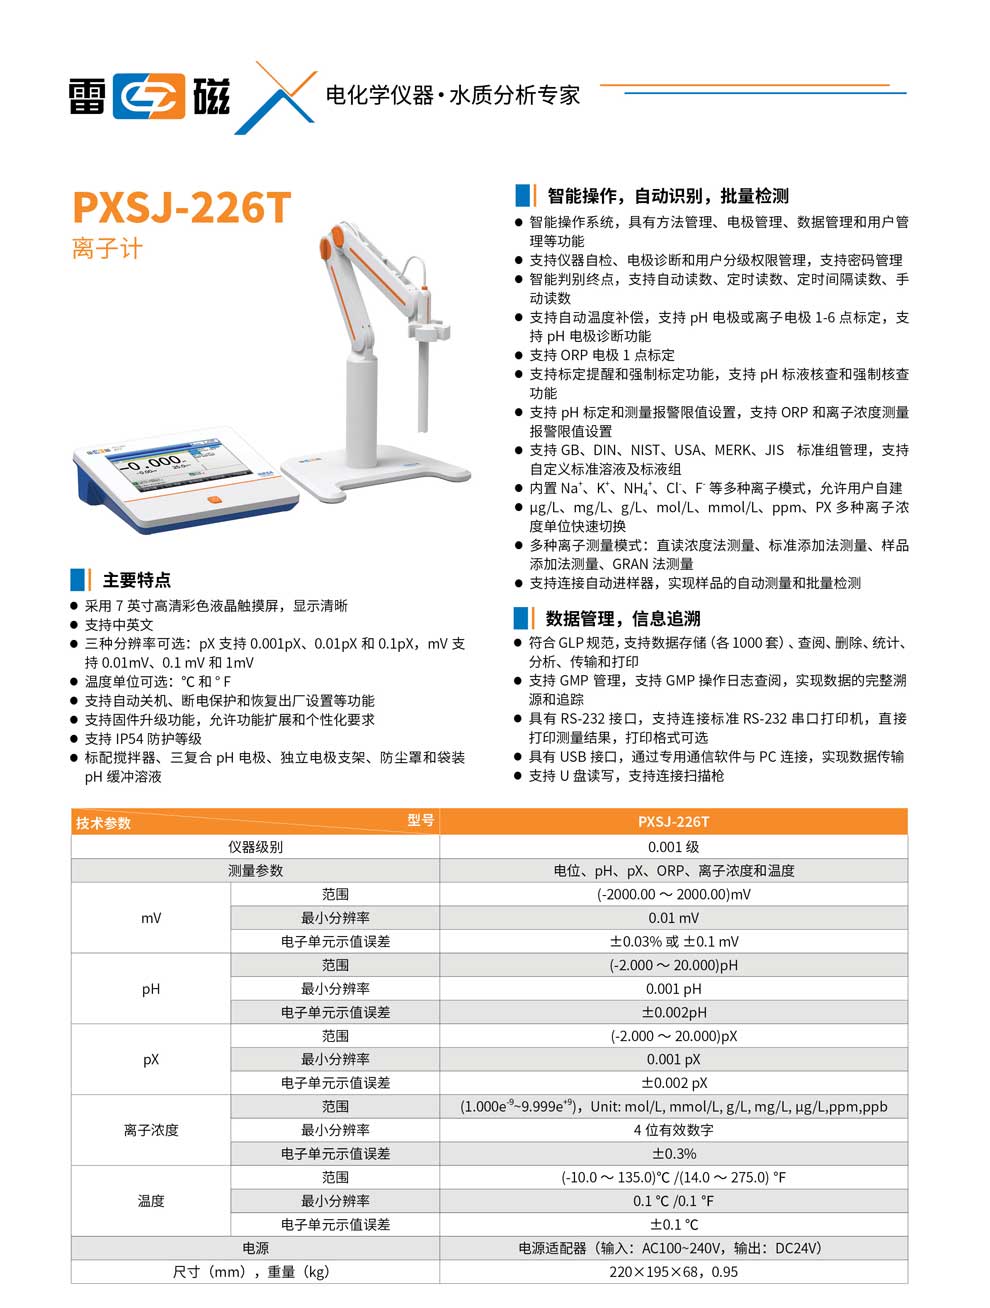 PXSJ-226T-彩.jpg